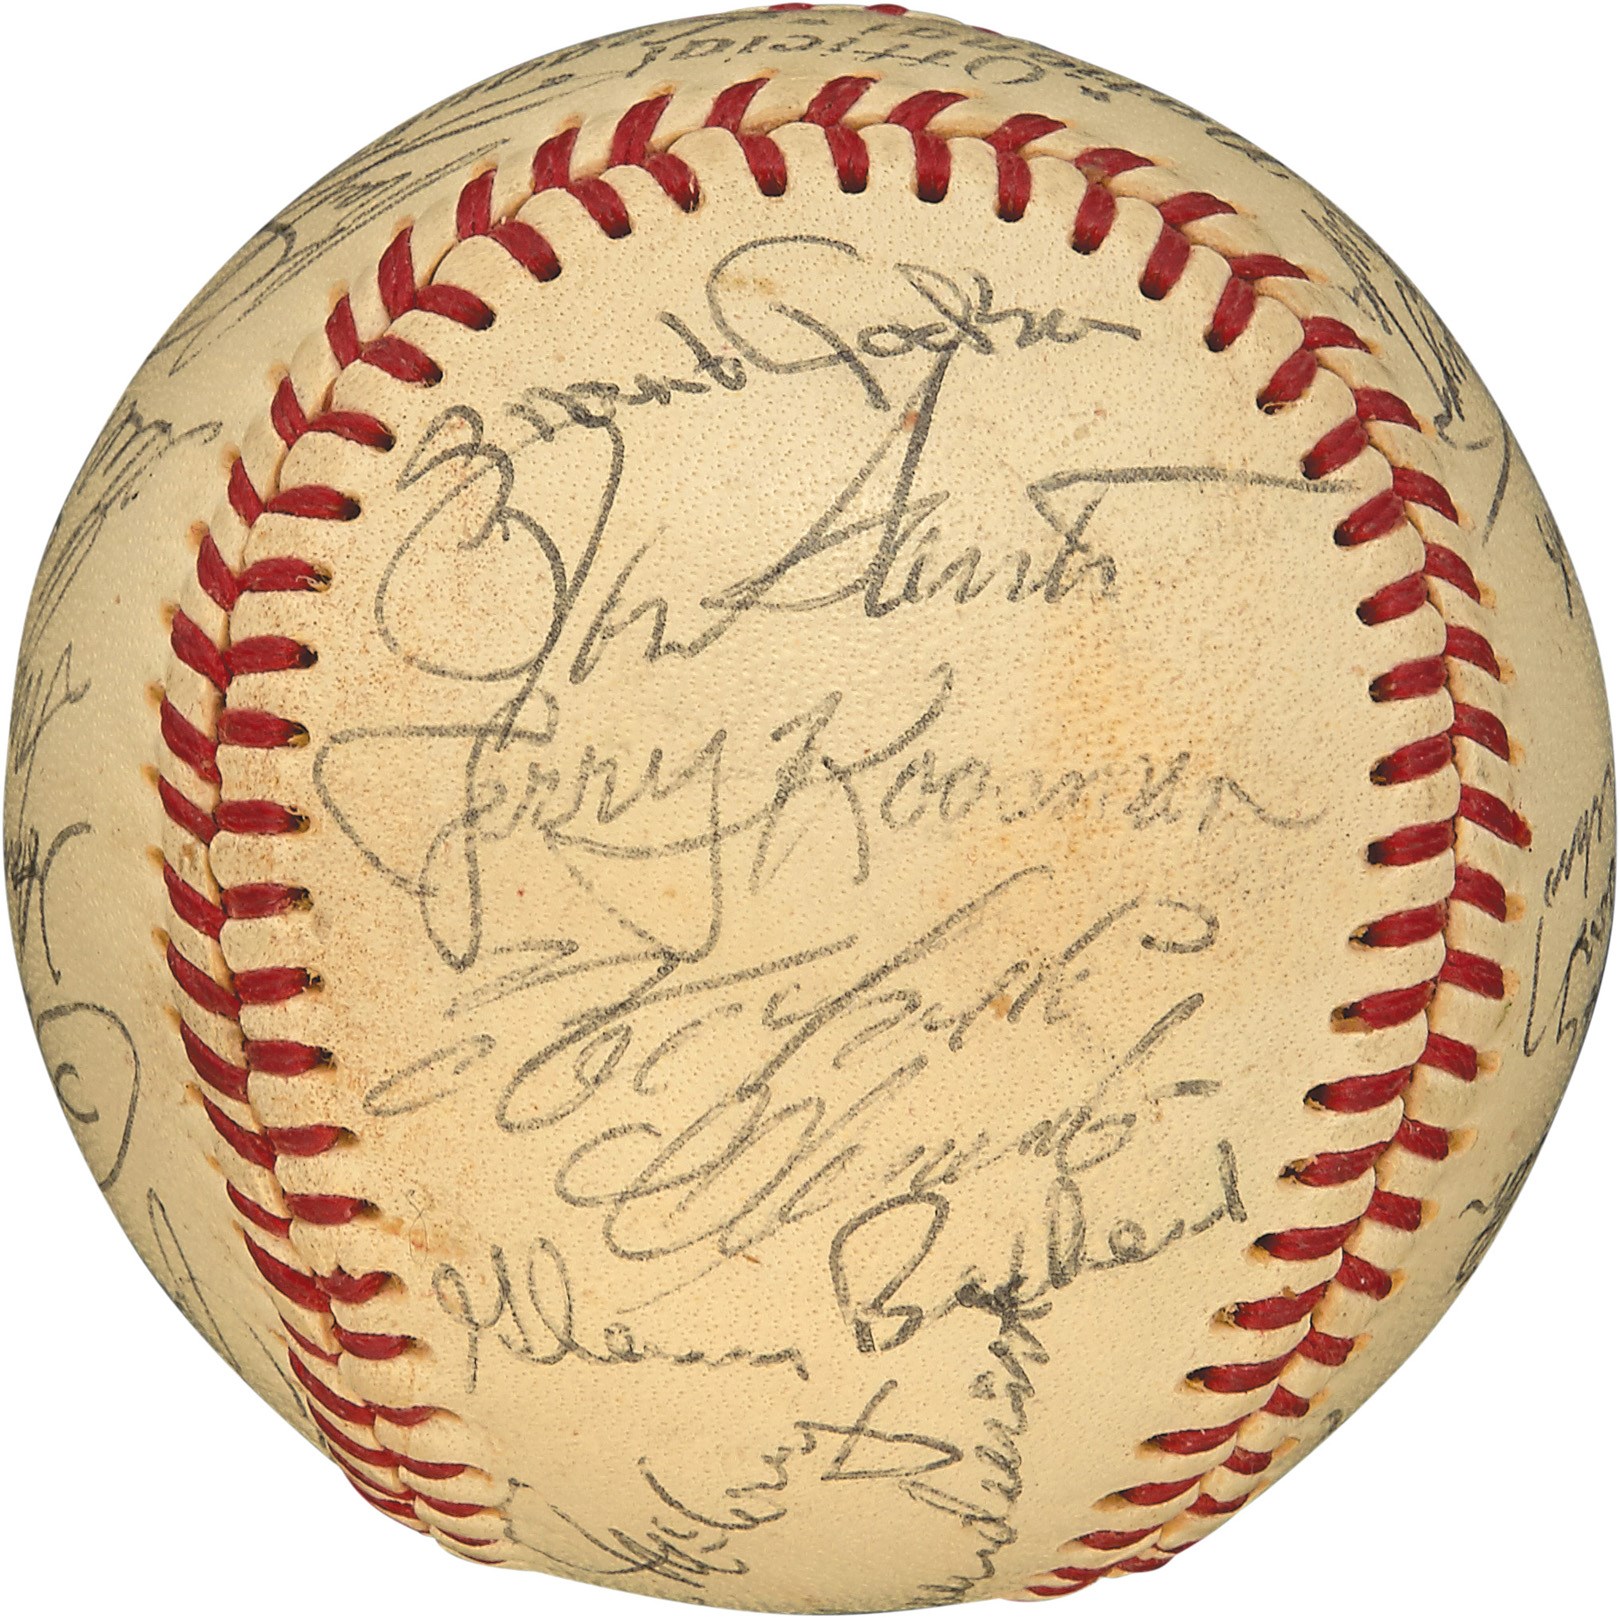 Baseball Autographs - High Grade 1969 National League All-Star Team-Signed Baseball w/Clemente (PSA)